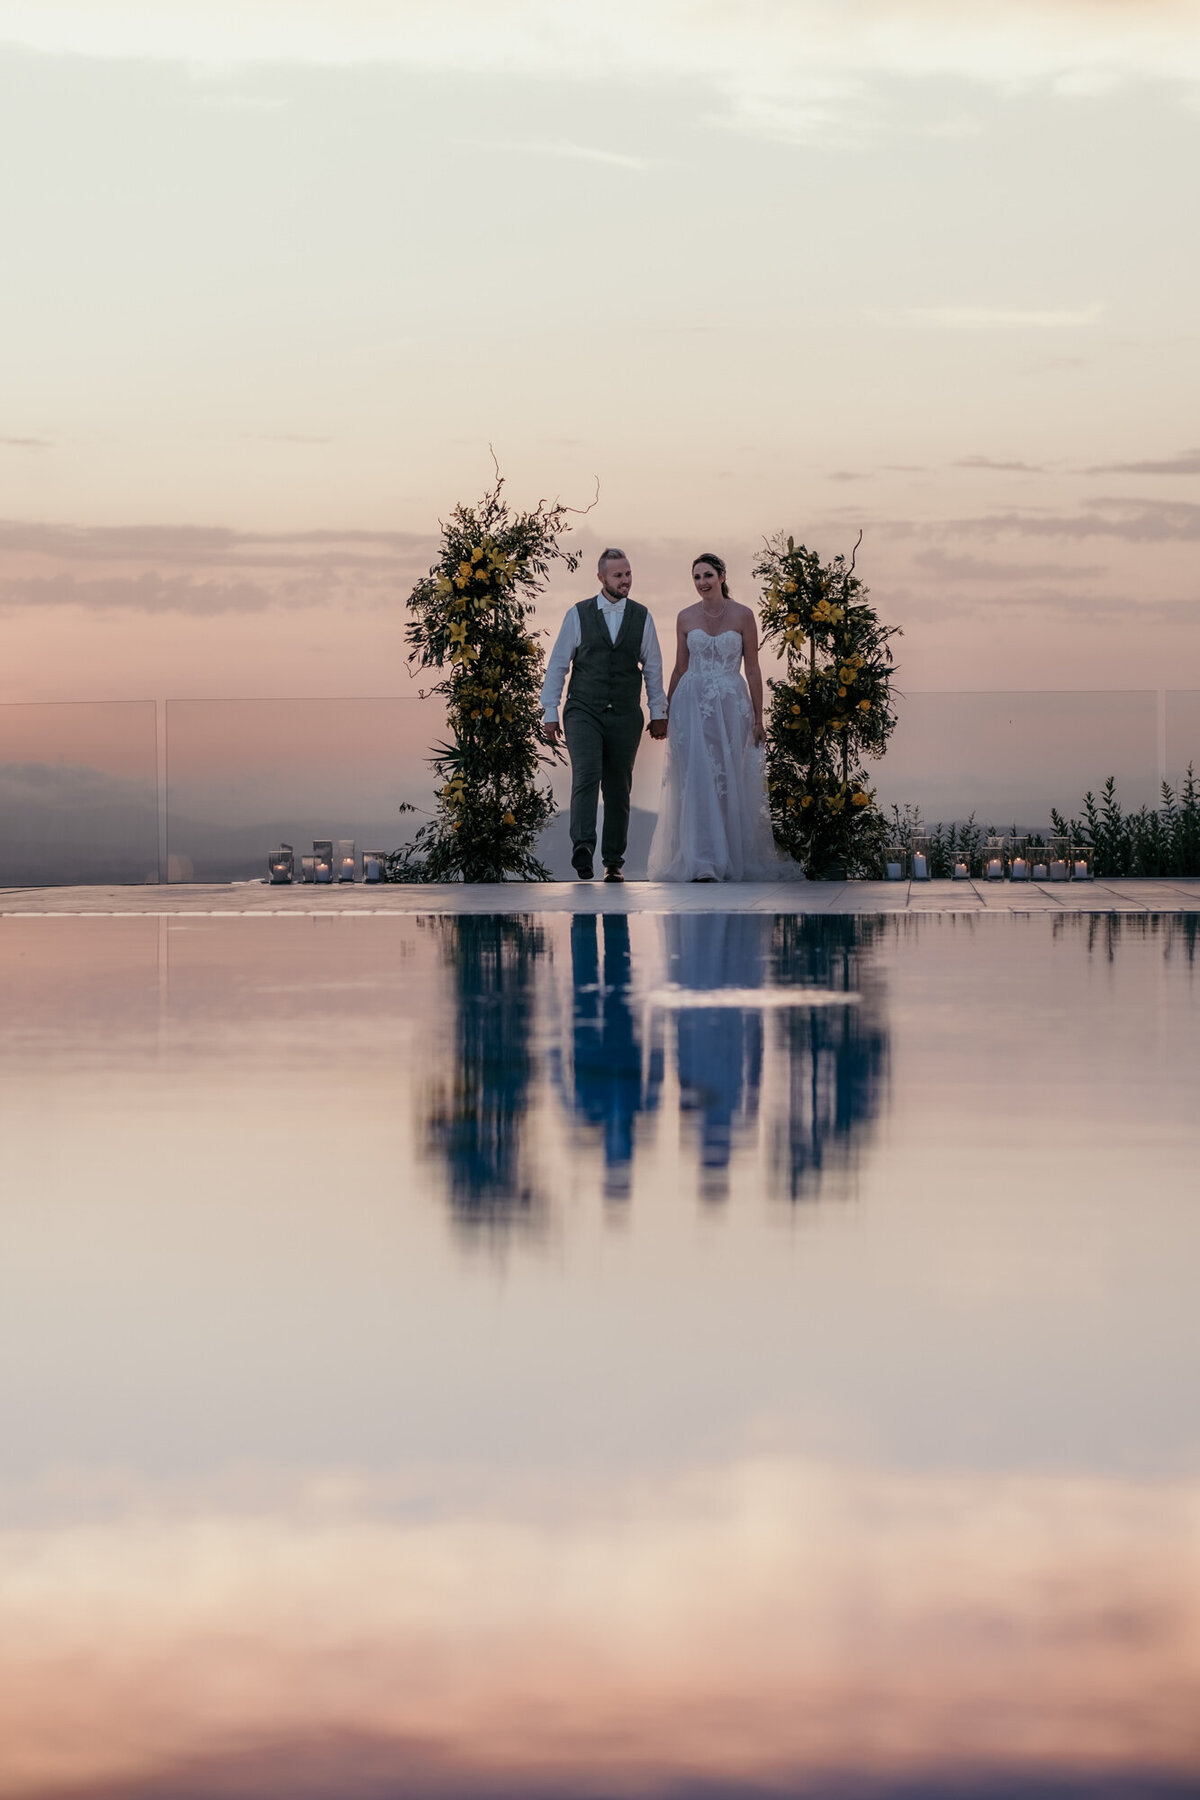 Die malerische Abenddämmerung spiegelt sich im Wasser des Pools, als das Paar darauf zugeht.